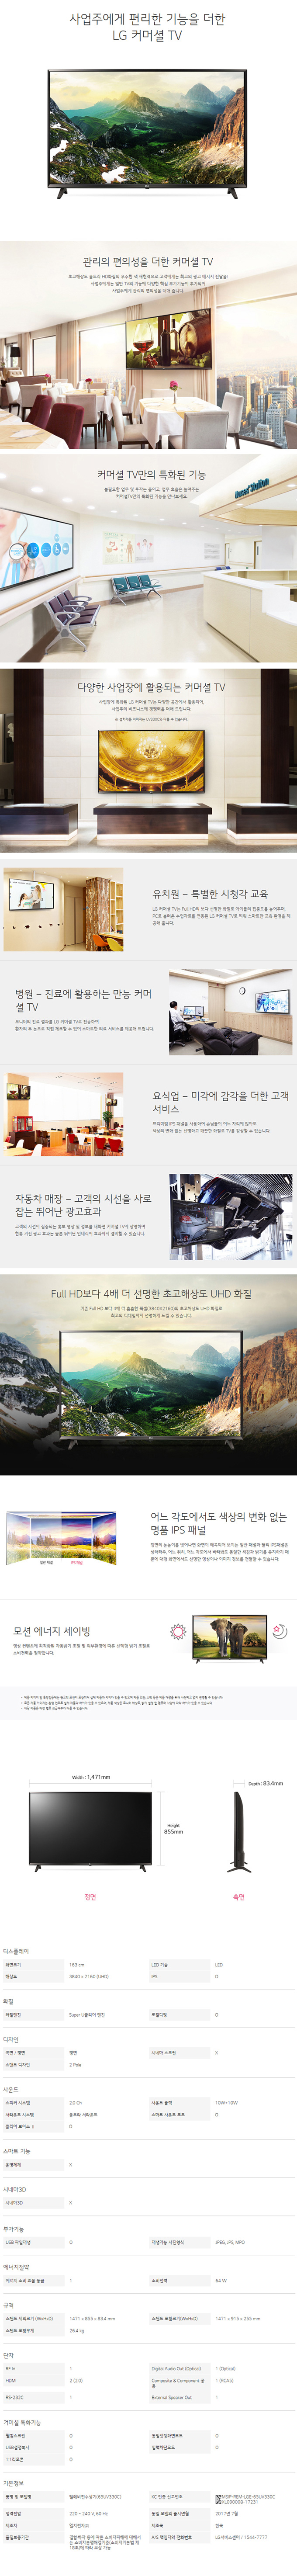 중앙케이블 - LG 65인치 UHD TV (65UK681C) 상세보기